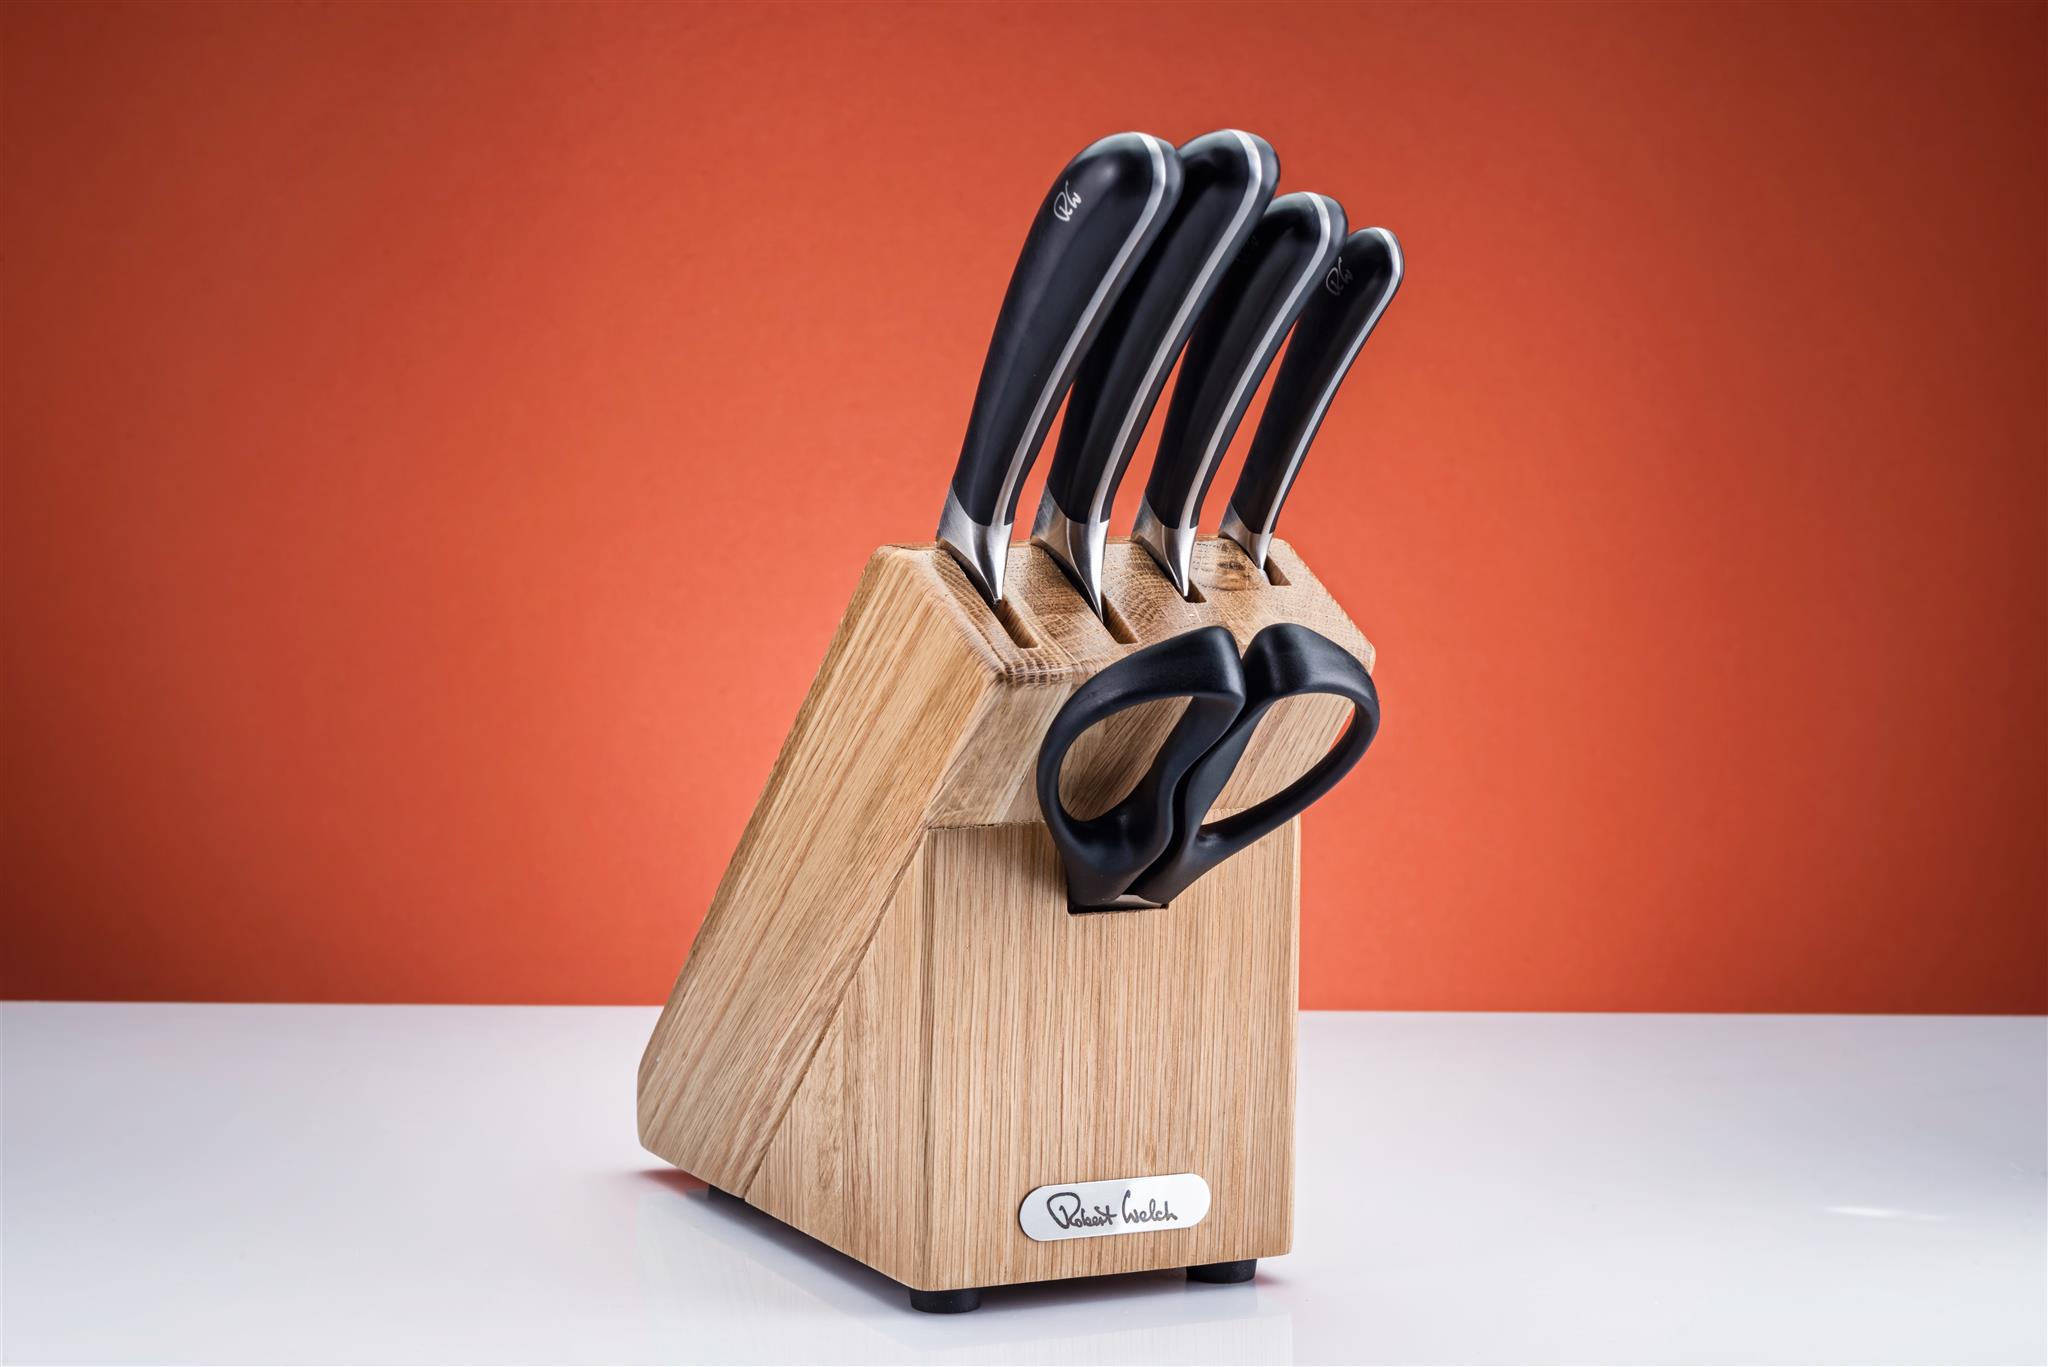 Купить Набор ножей на деревянной подставке, 6 предметов Robert Welch (Роберт Уэлш)